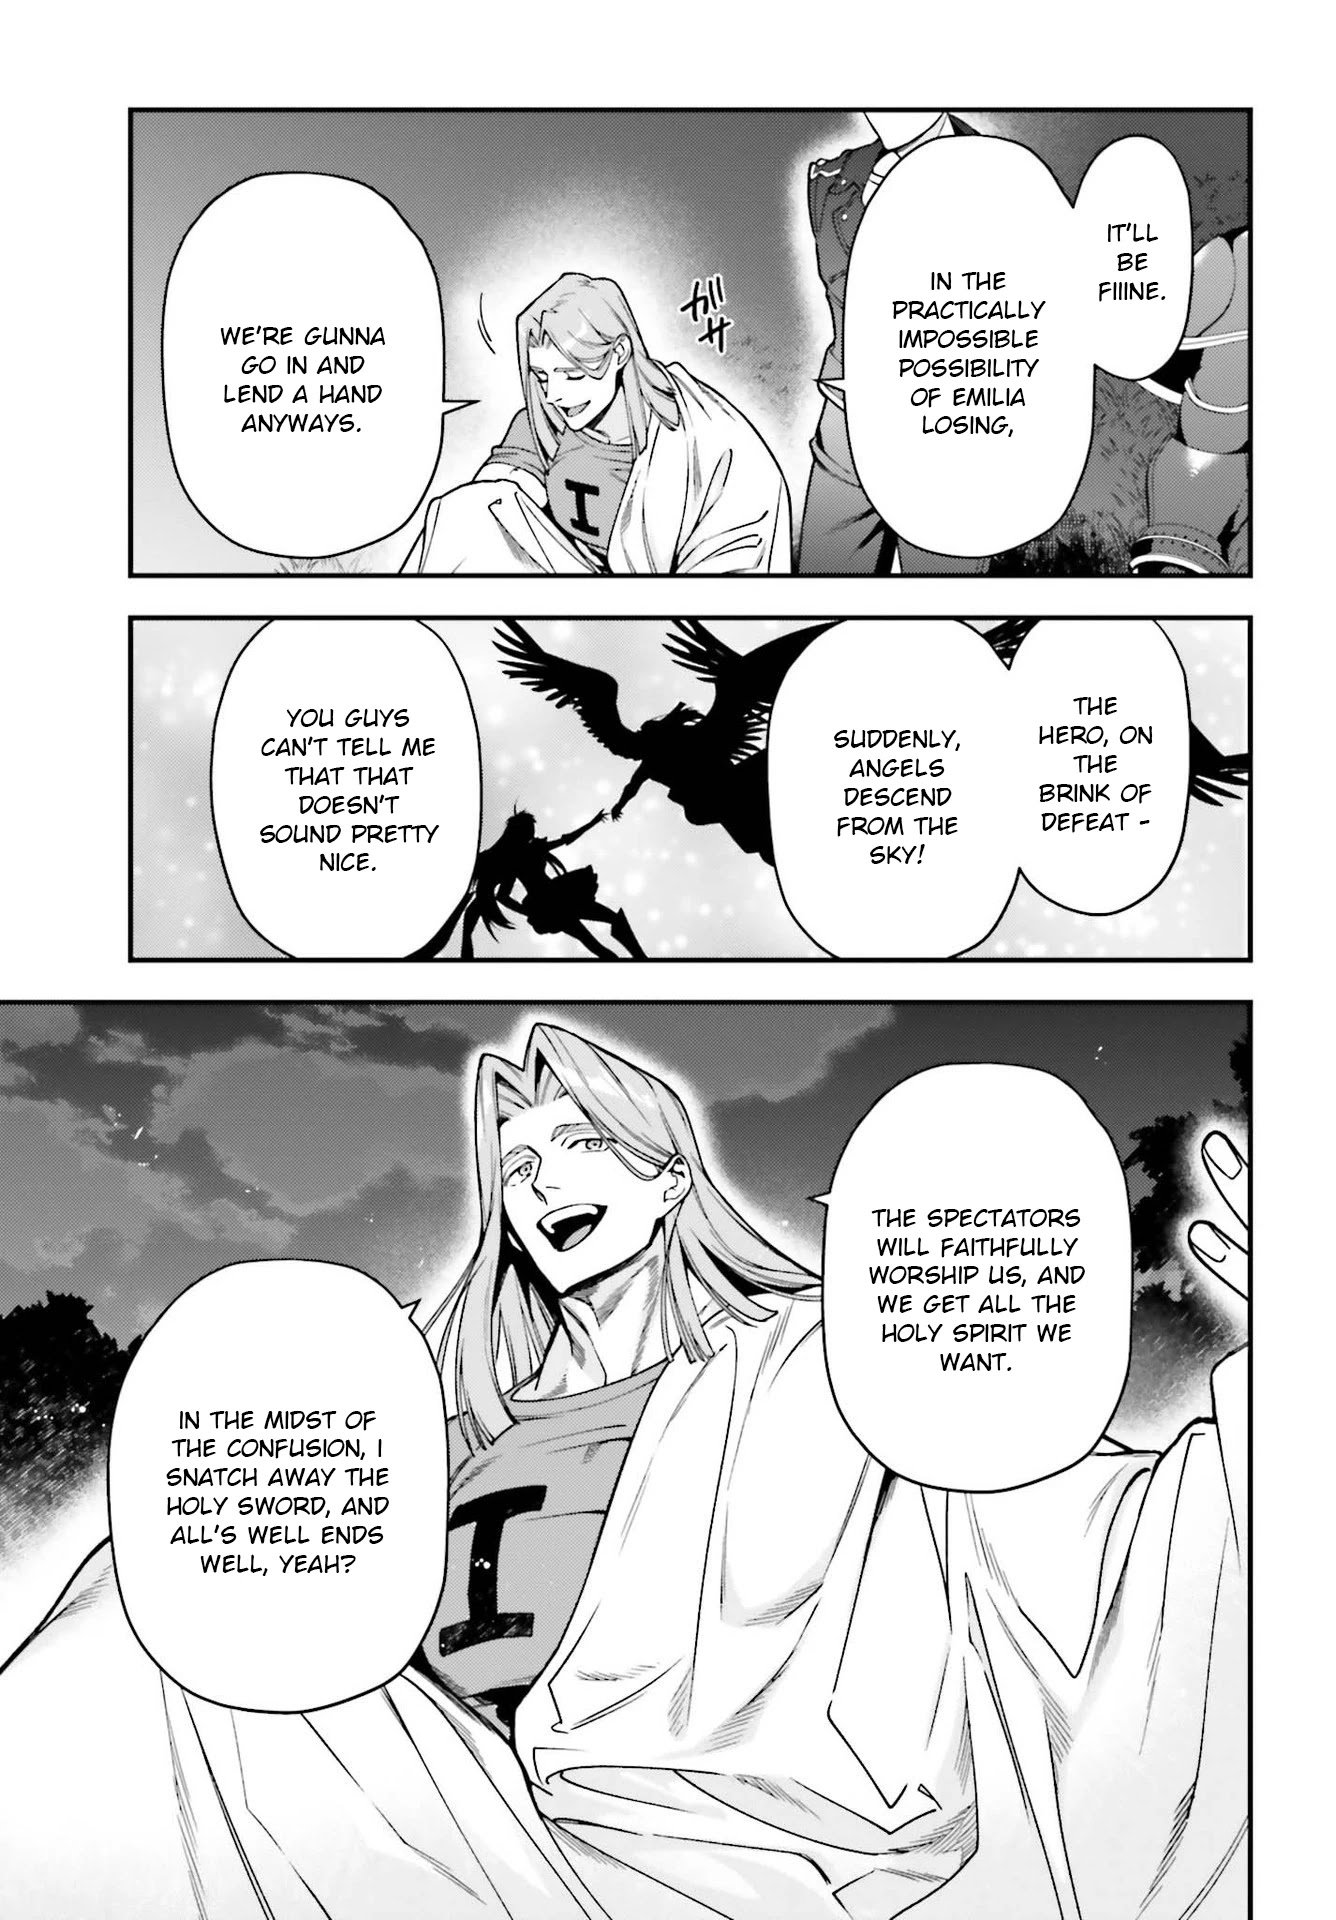 Hataraku Maousama! chapter 96 page 2